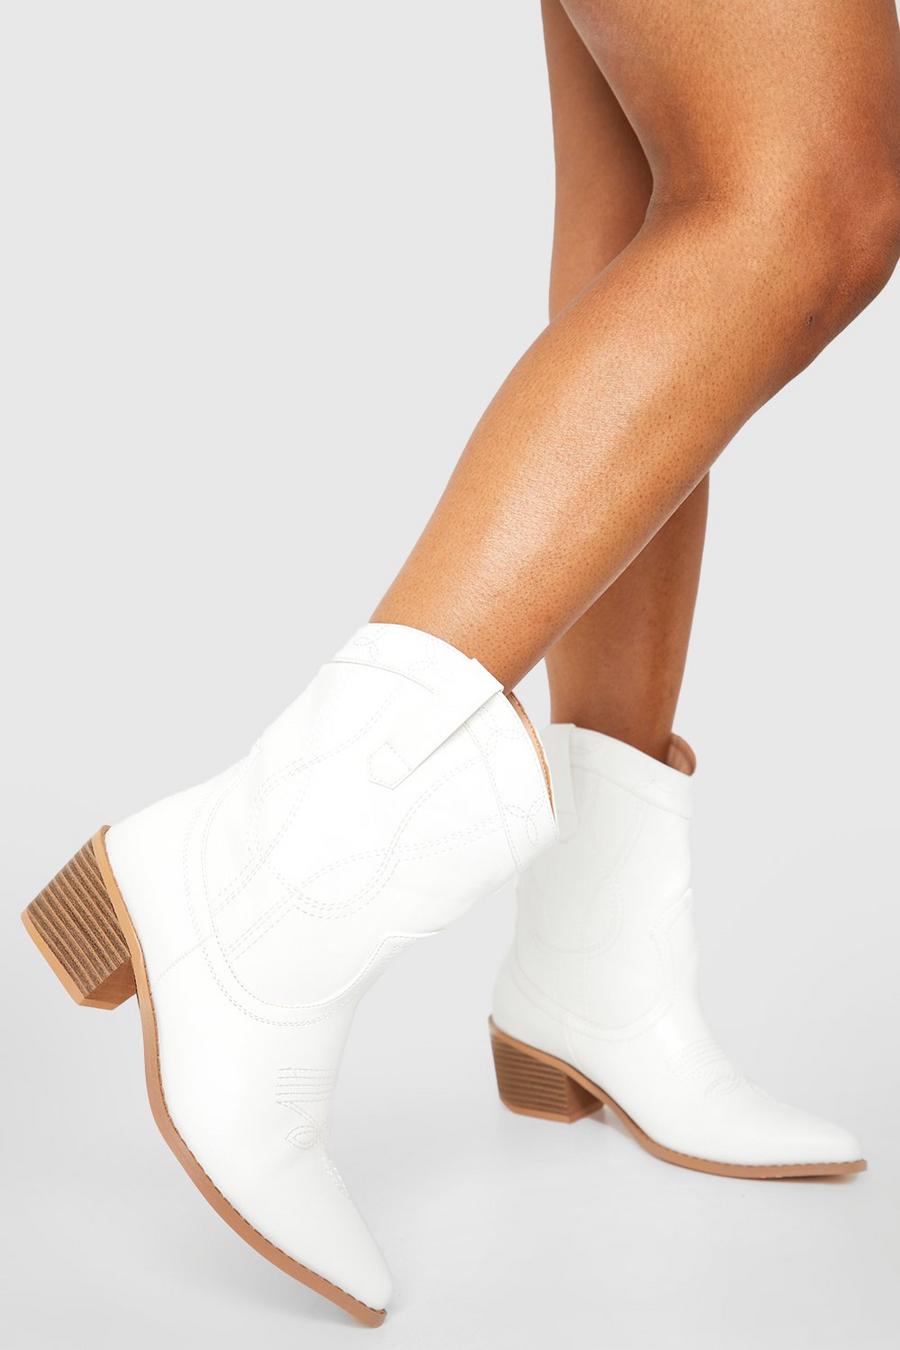 Botas Western de holgura ancha por el tobillo con detalle de costuras y cuero sintético, White